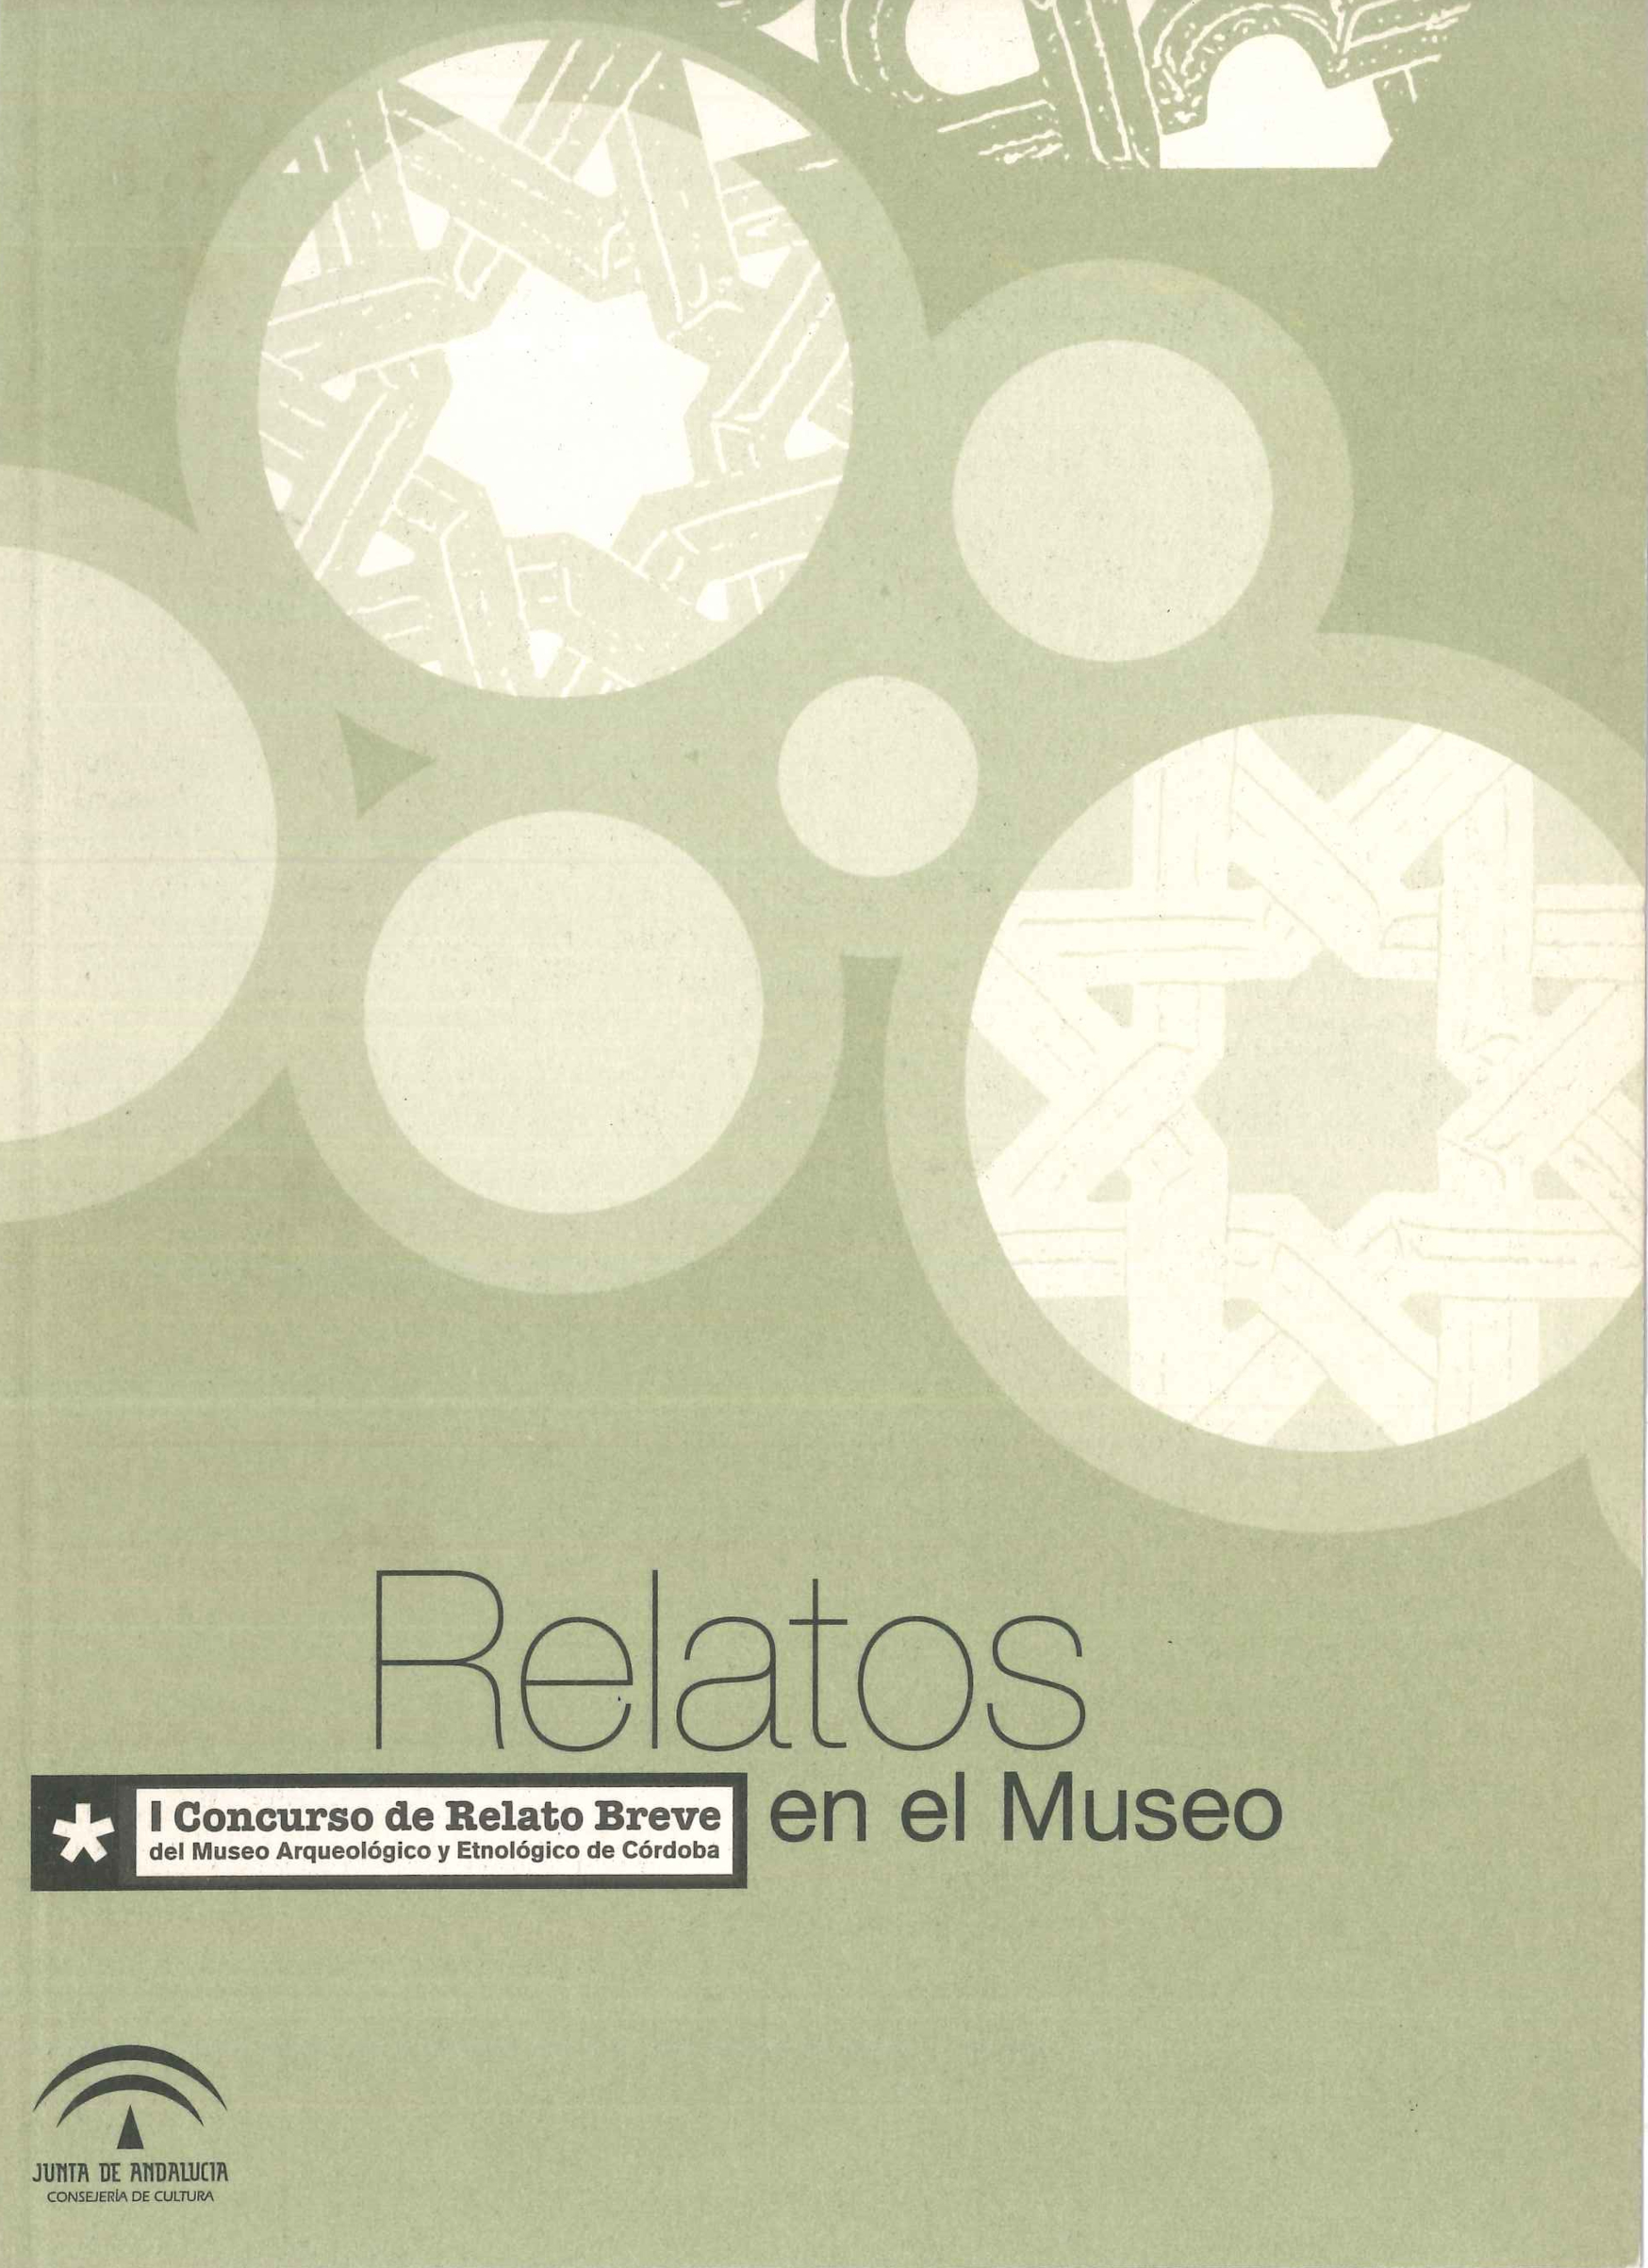 Relatos en el Museo. I Concurso de Relato Breve del Museo Arqueológico y Etnológico de Córdoba